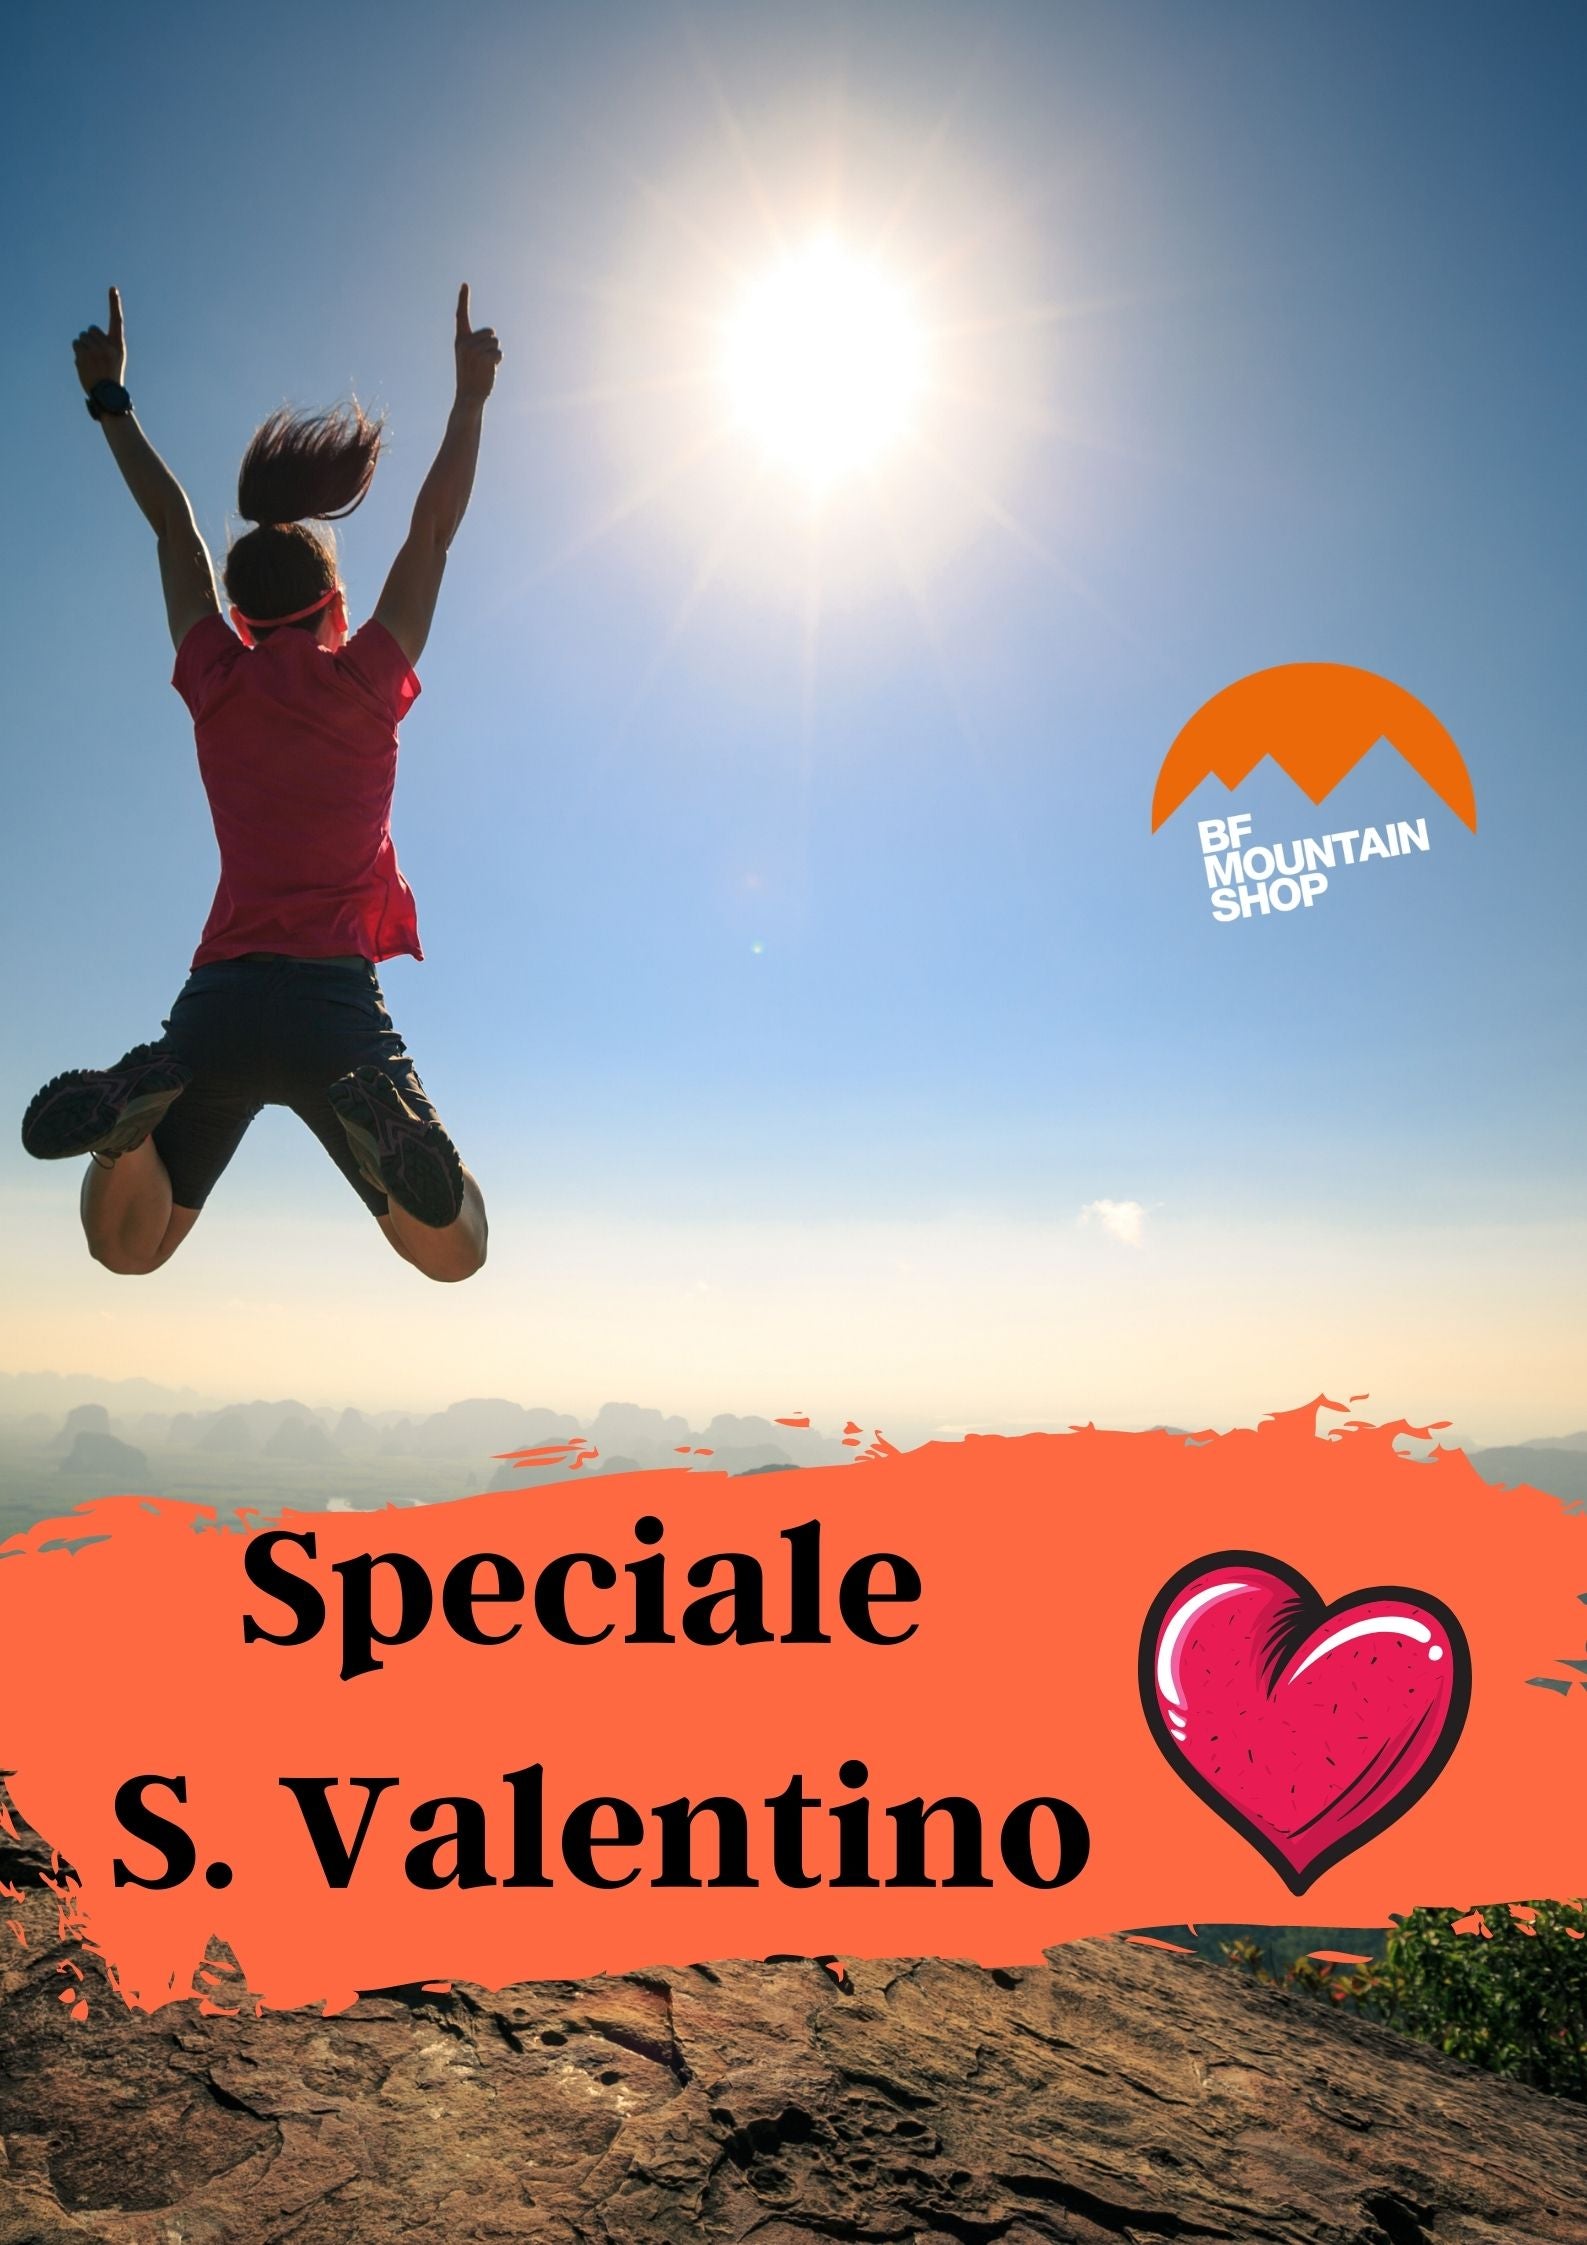 Speciale S. Valentino!